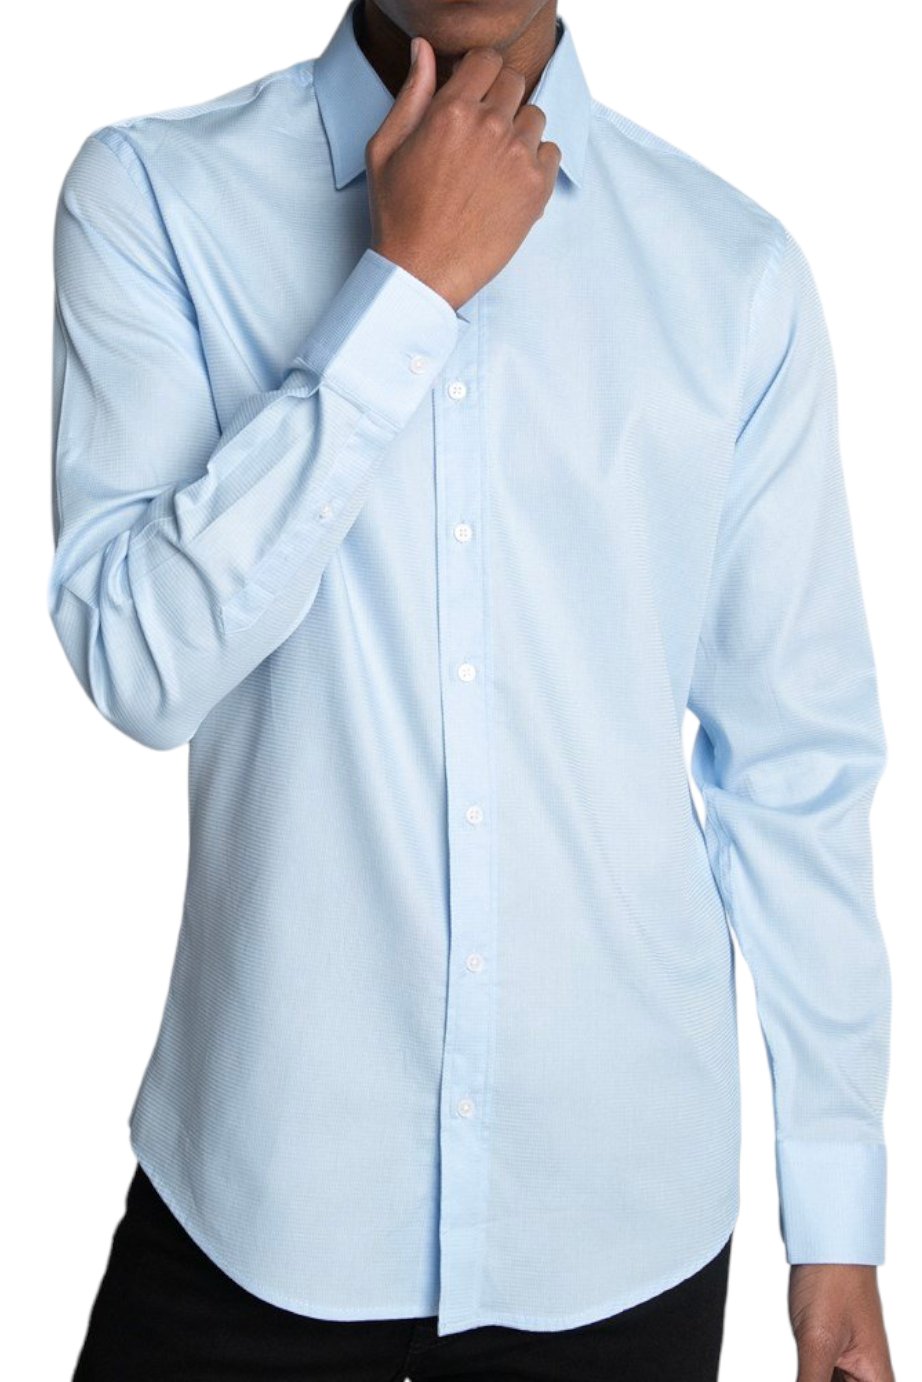 Classic Fit Blue Long Sleeve Cotton Texture Shirt 99percenthandmade   